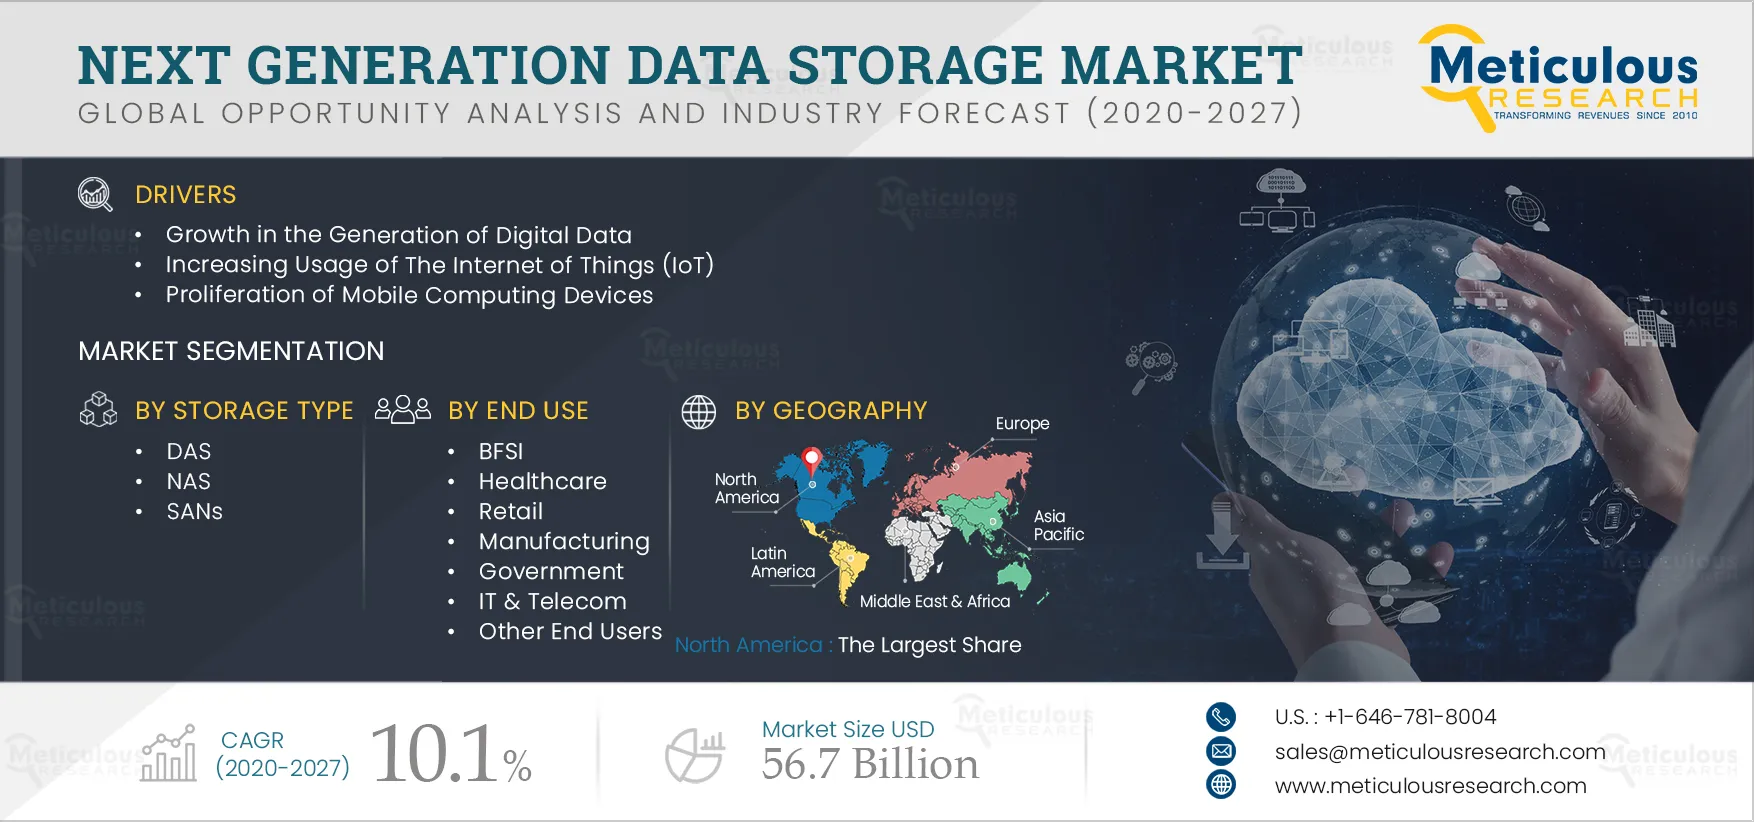 Next Generation Data Storage Market